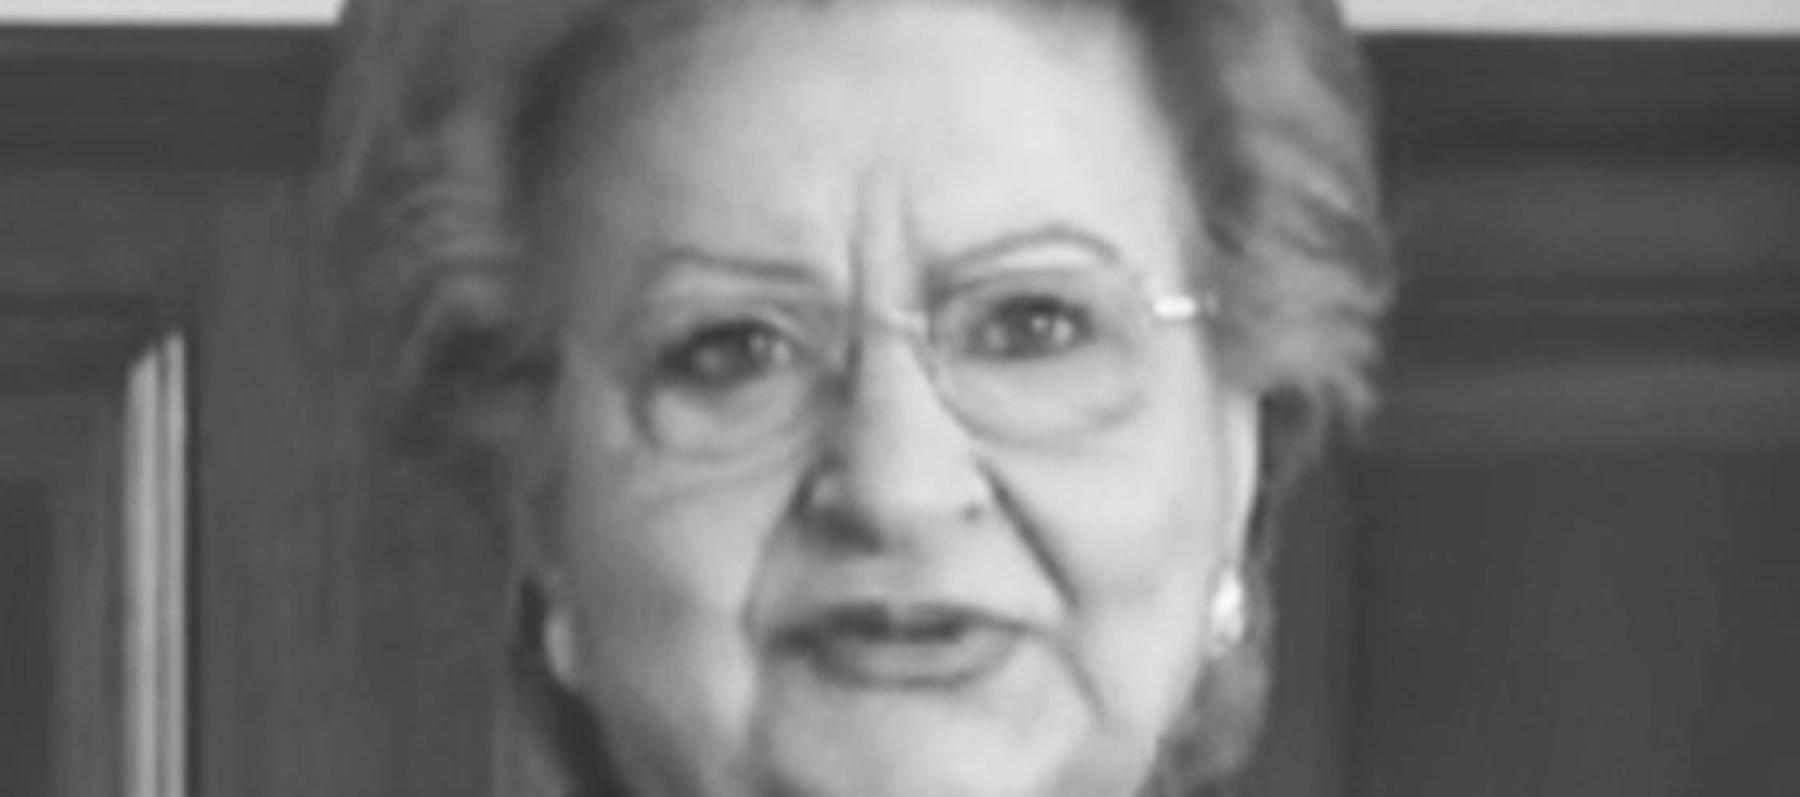 وفاة كاميليا الأطرش إبنة أسمهان عن 85 عاماً